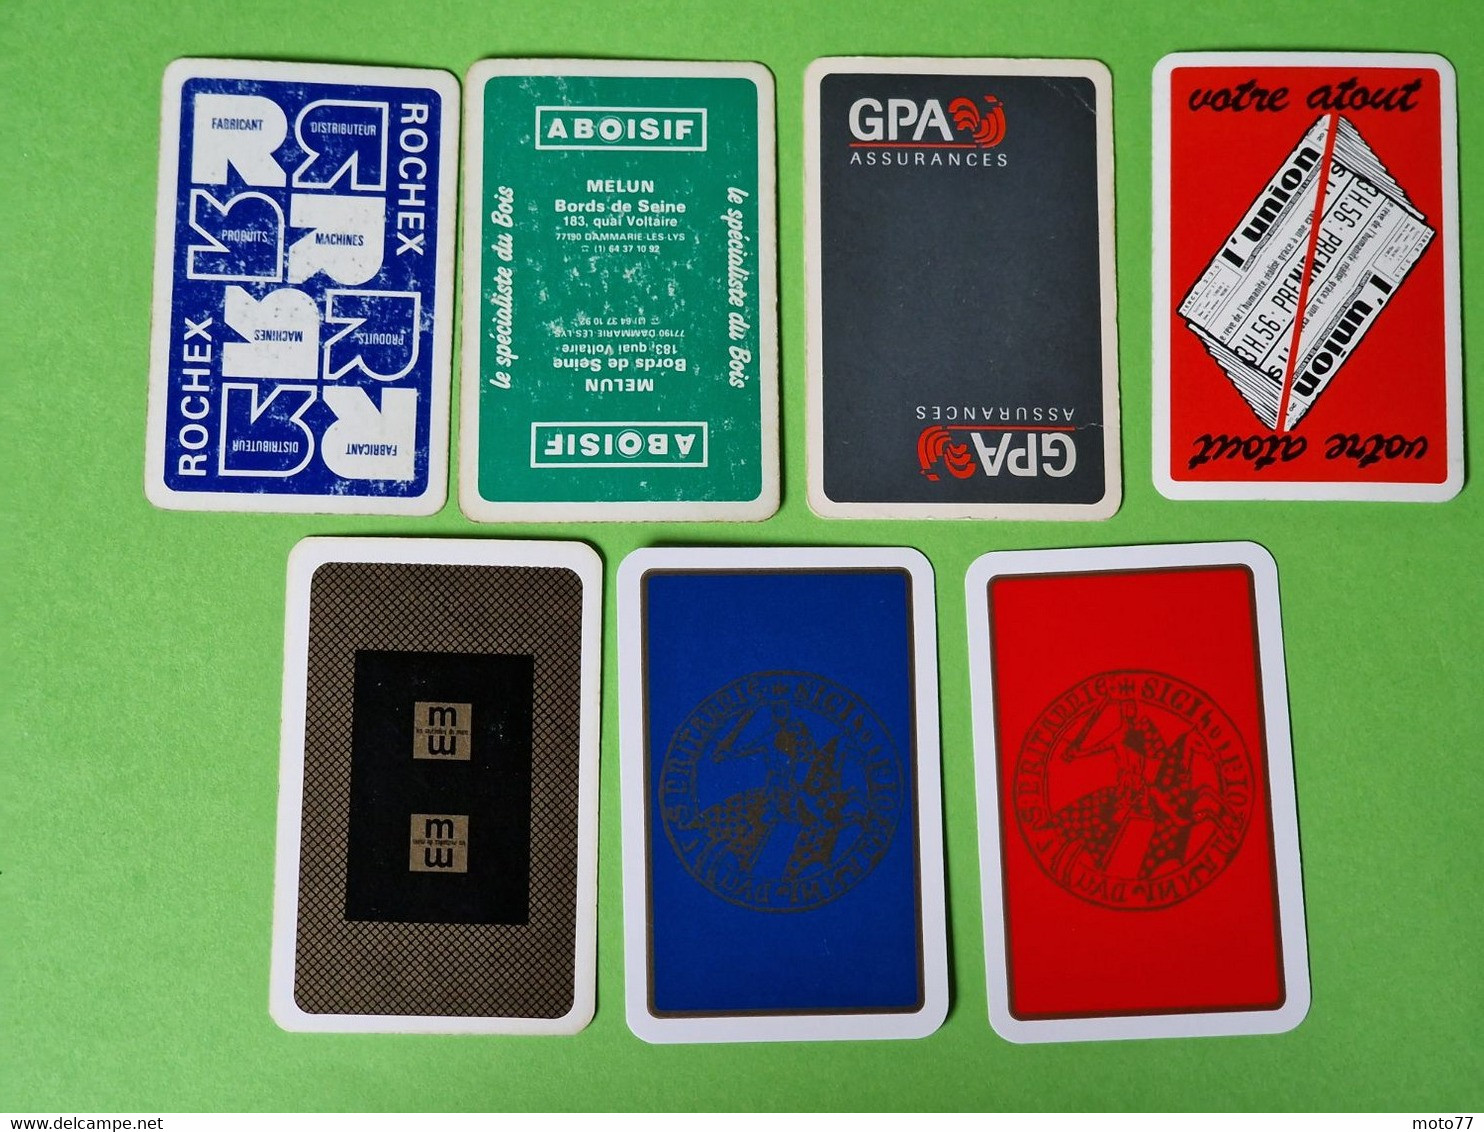 Lot 7 Cartes à Jouer - DAME De PIQUE - Dos Bleu,Rouge - Pub L'UNION Reims, ABOISIF, GPA, M&M, ROCHEX - Vers 1990/2000 - 32 Karten